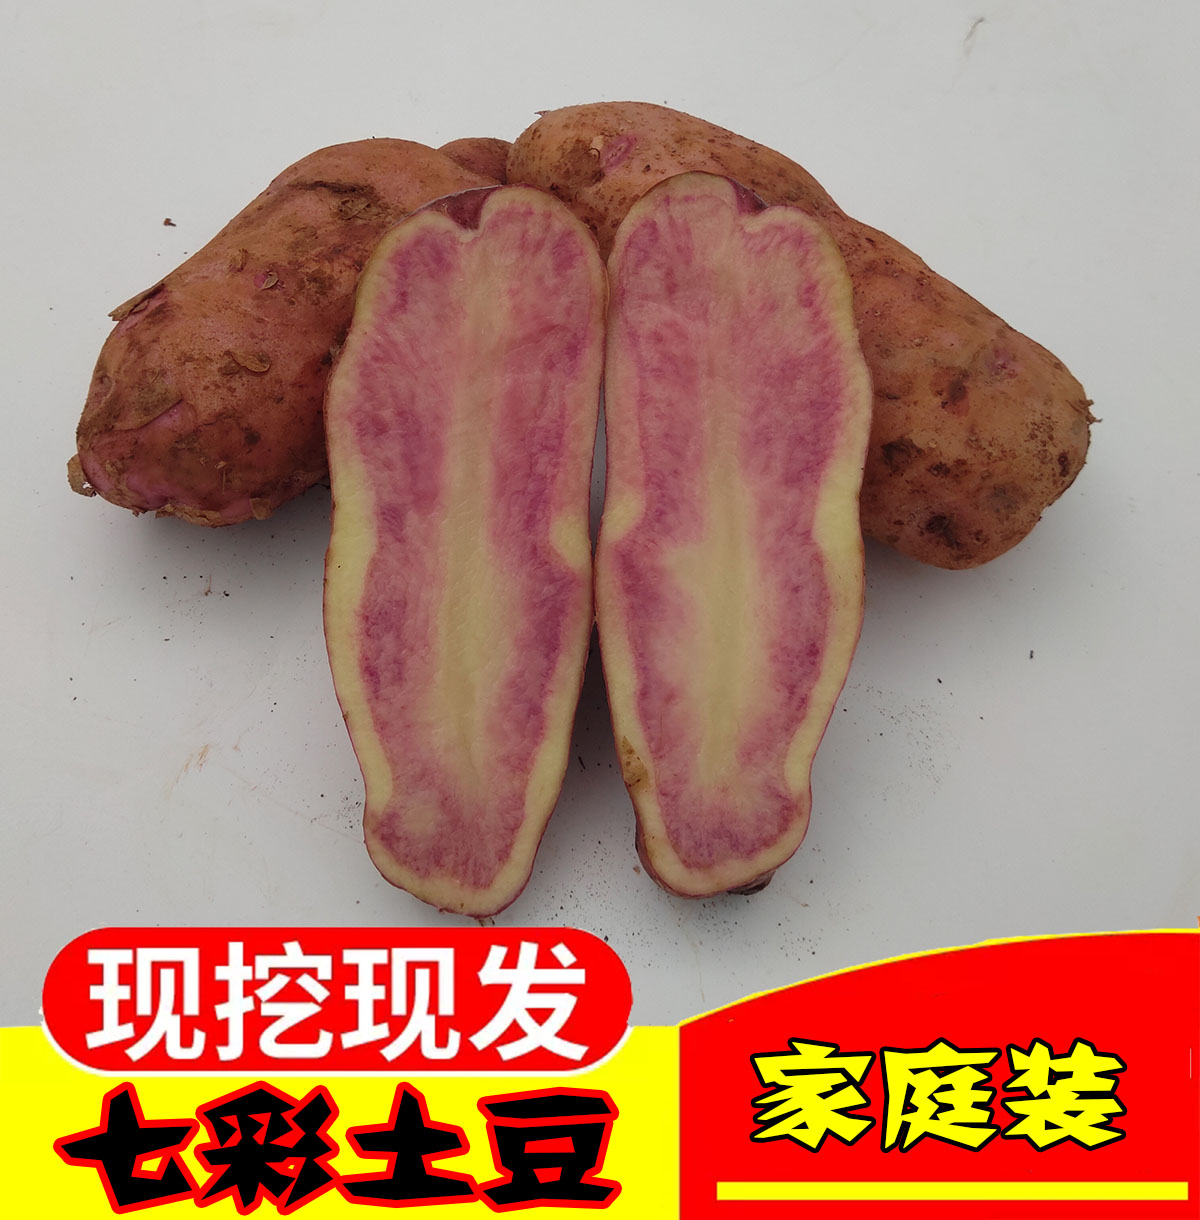 云南丽江七彩土豆新鲜红皮红心农家大马铃薯现挖花心洋芋10斤包邮